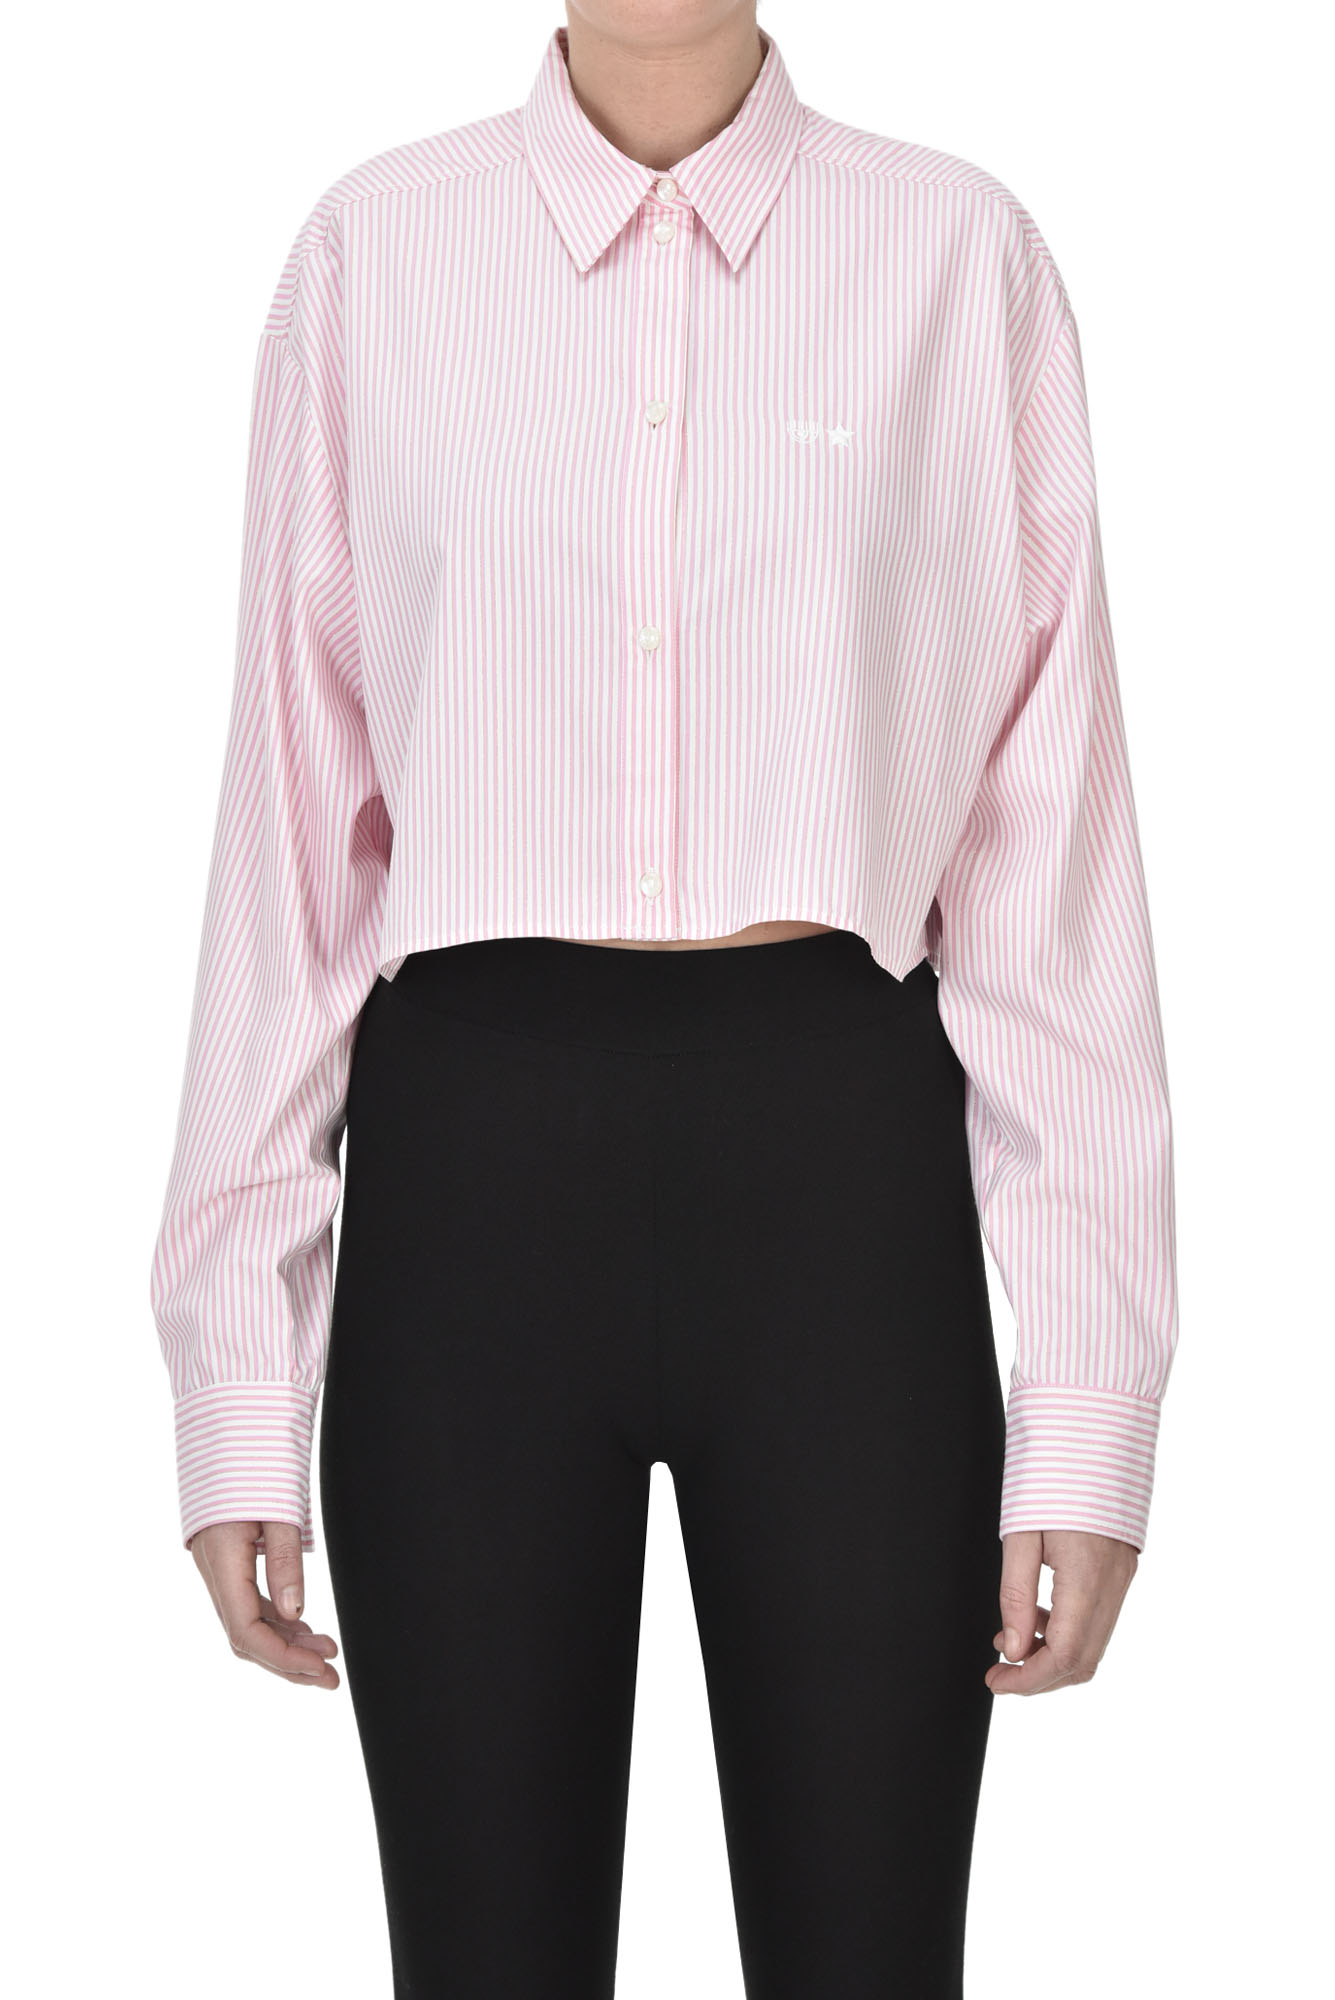 Chiara Ferragni Cropped Striped Shirt In Pink